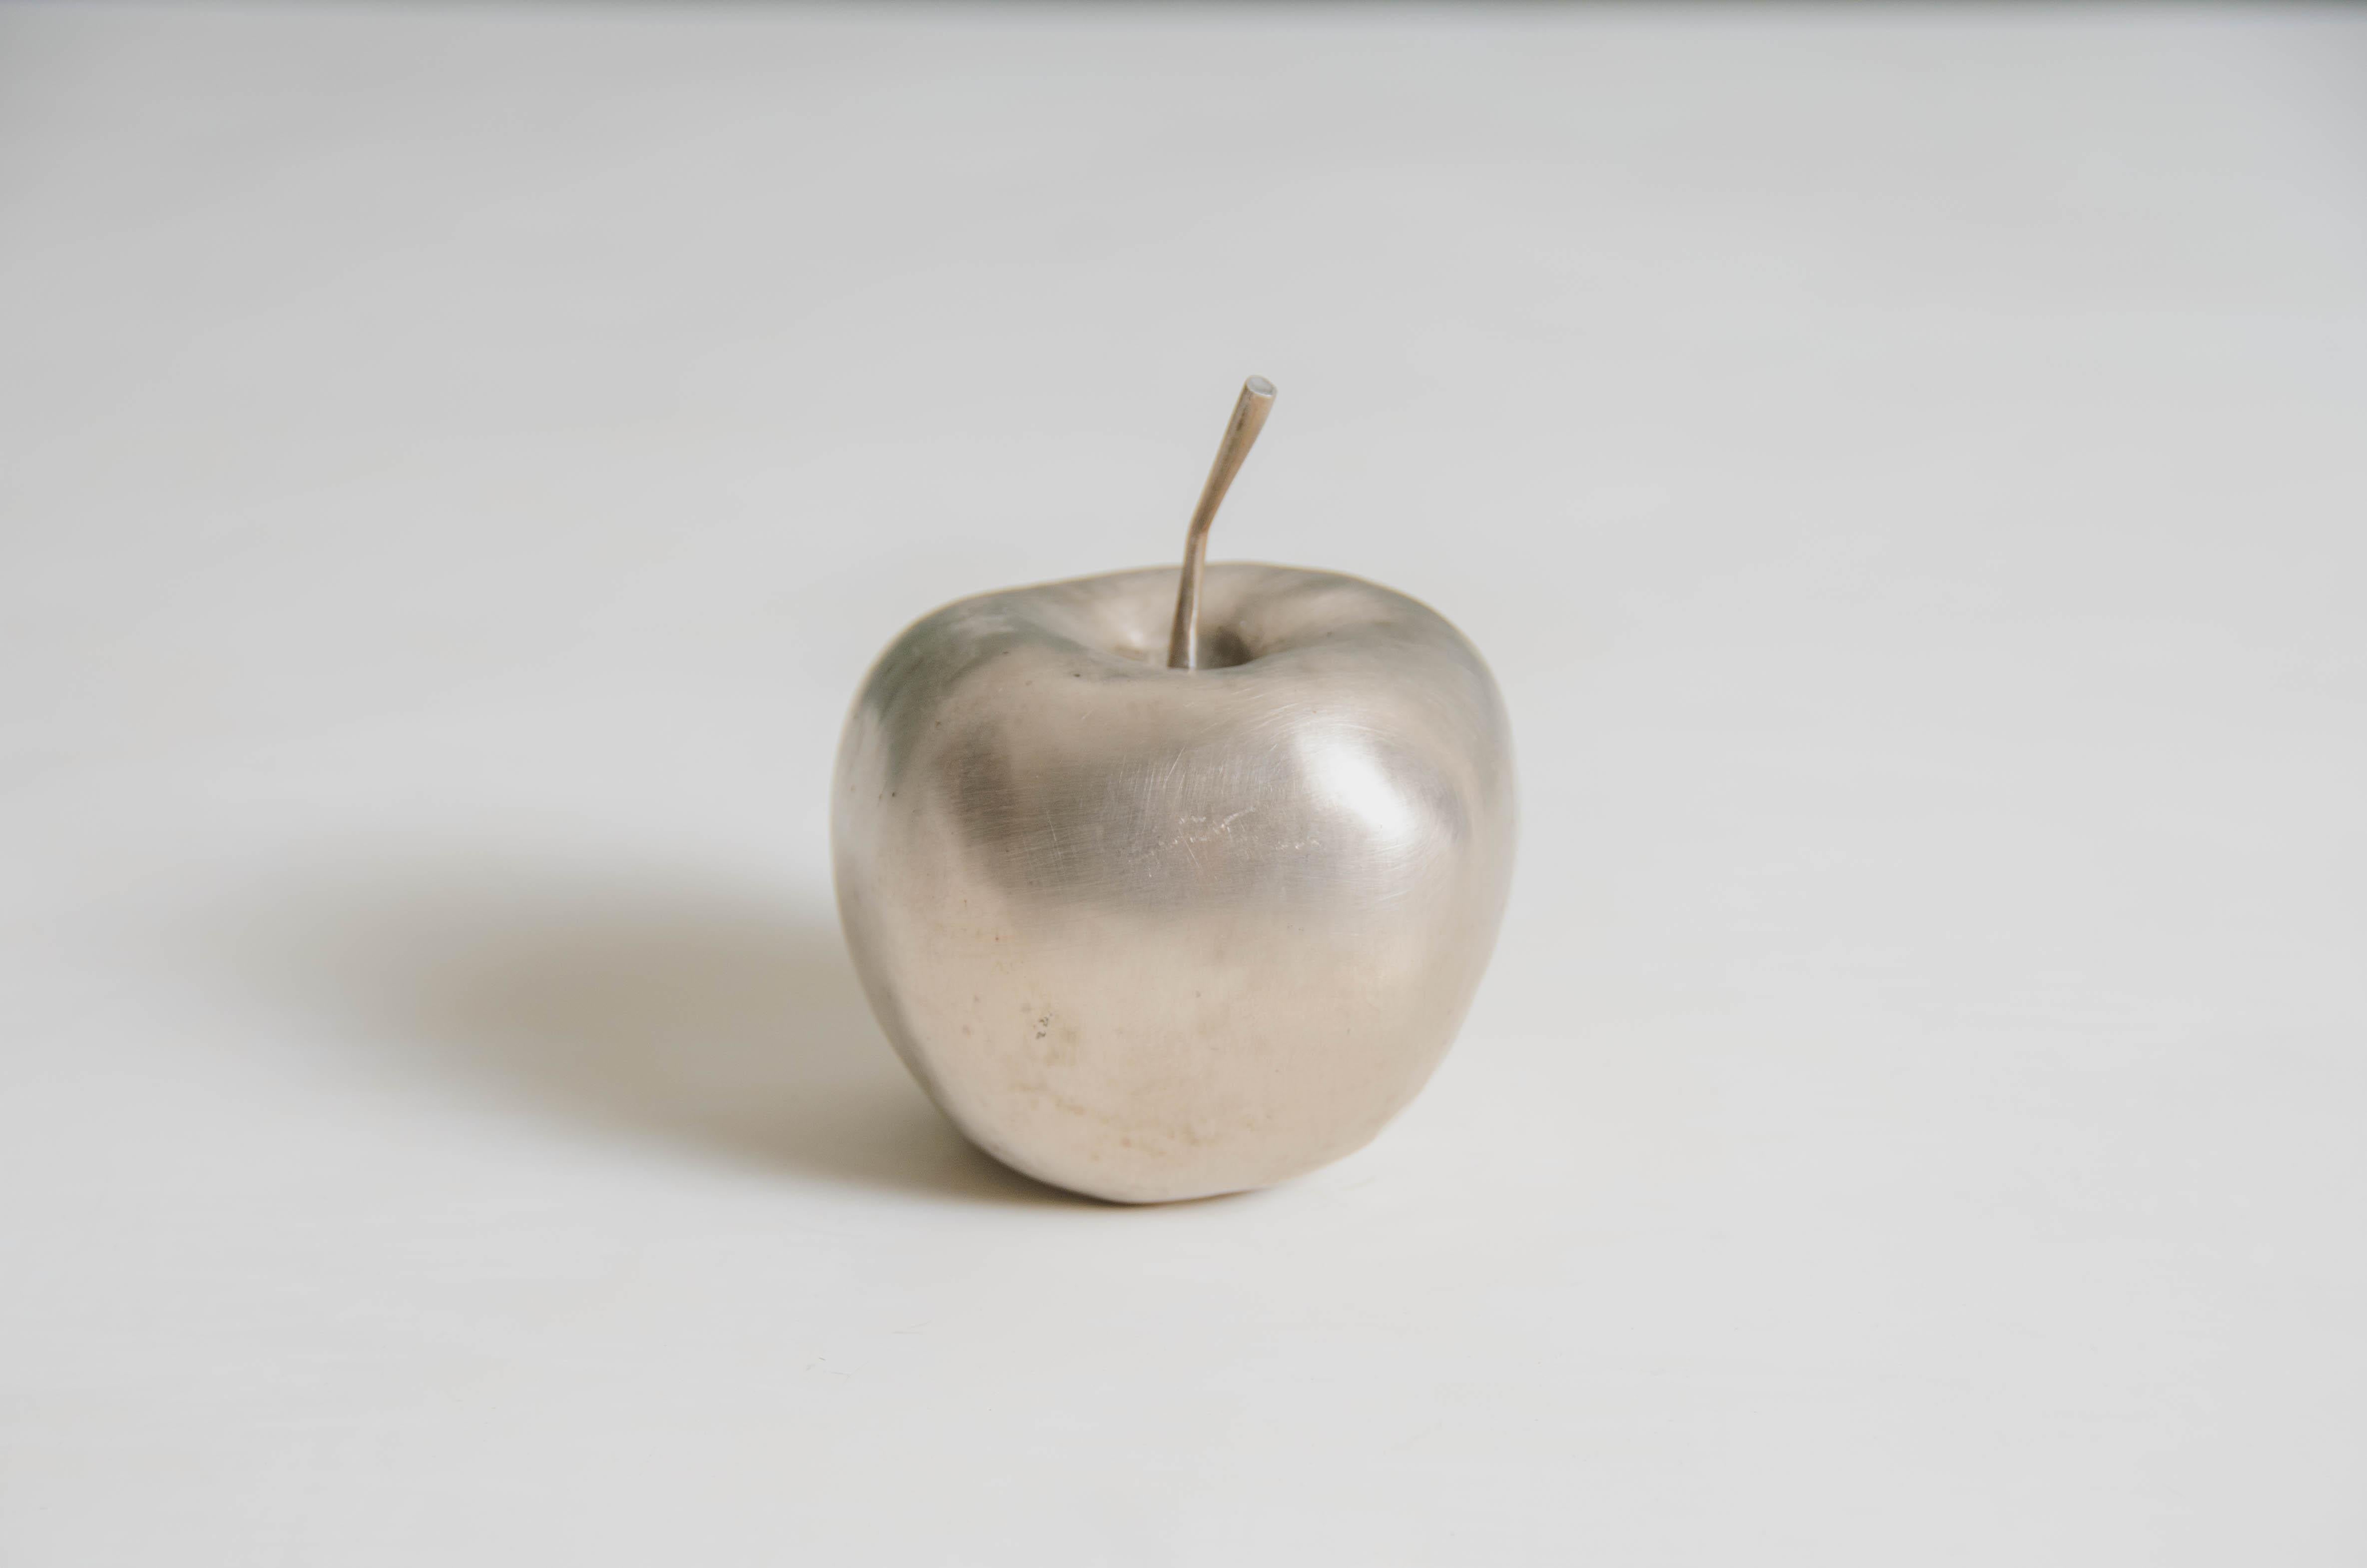 Sculpture de pomme
Bronze blanc
Repoussé à la main
Edition limitée
Chaque pièce est fabriquée individuellement et est unique. 
Le repoussé est l'art traditionnel qui consiste à marteler à la main un relief décoratif sur une feuille de métal. La